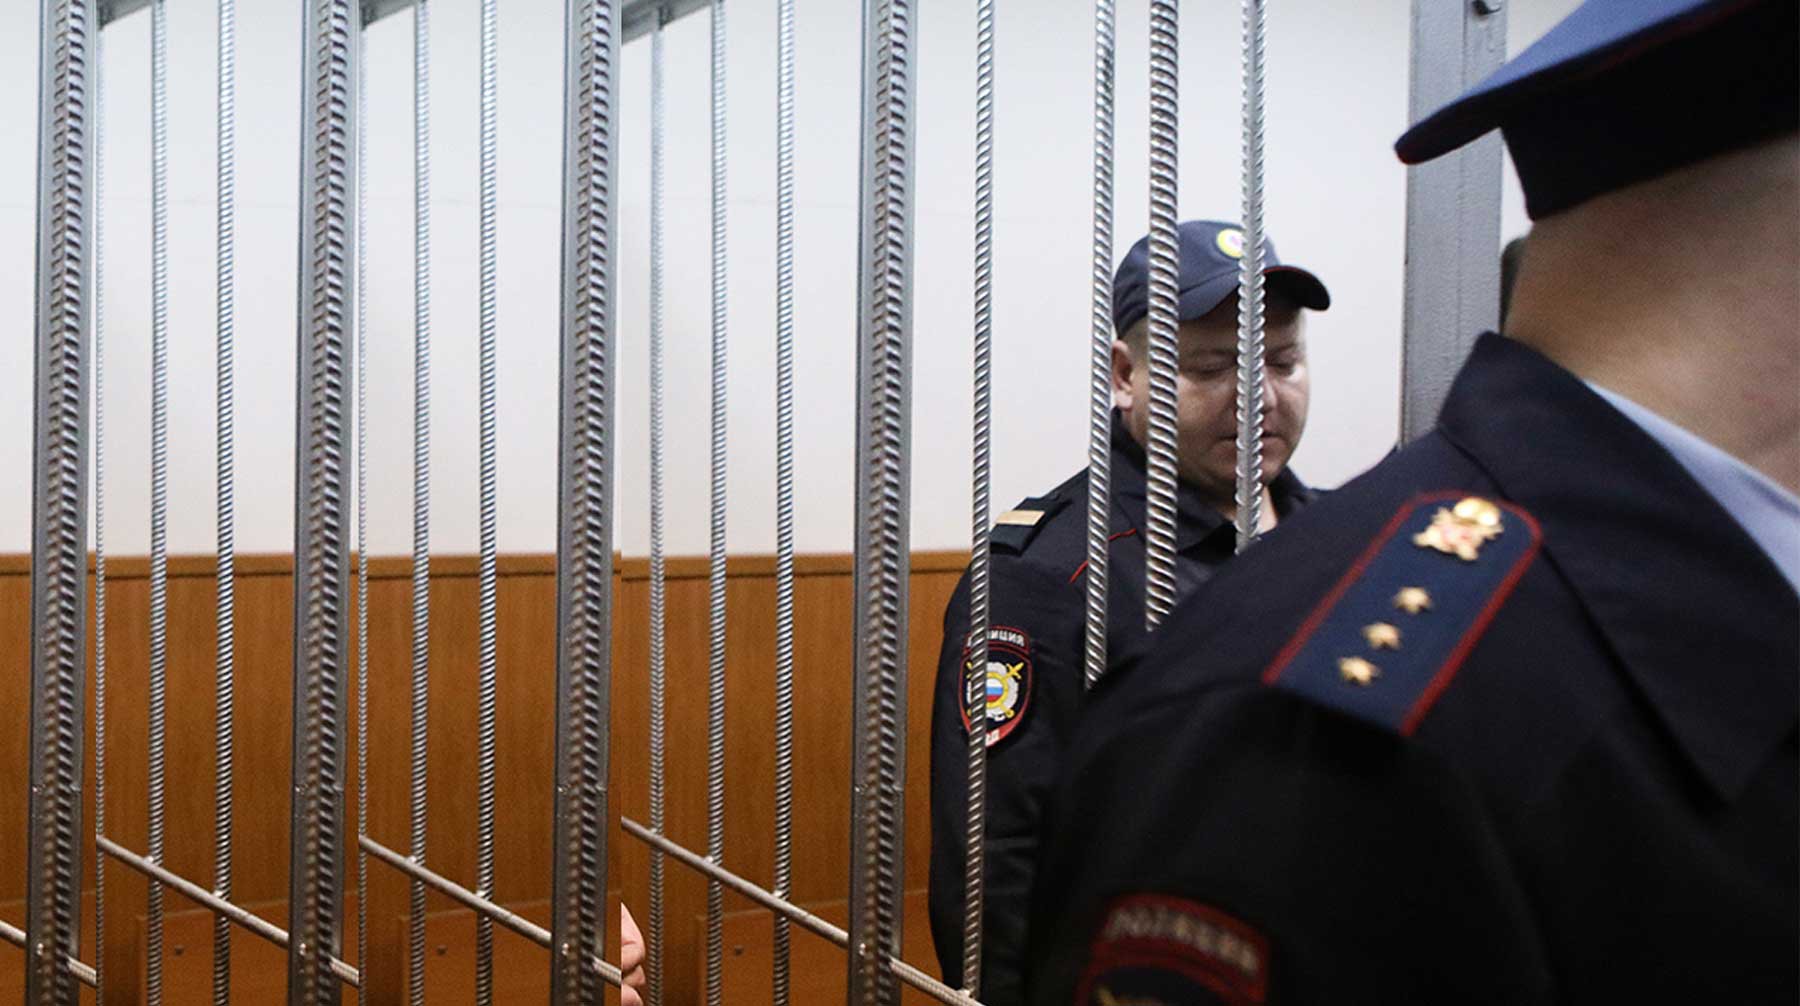 Dailystorm - Суд арестовал экс-сотрудников ФСБ Фролова и Васильева за вымогательство 490 миллионов